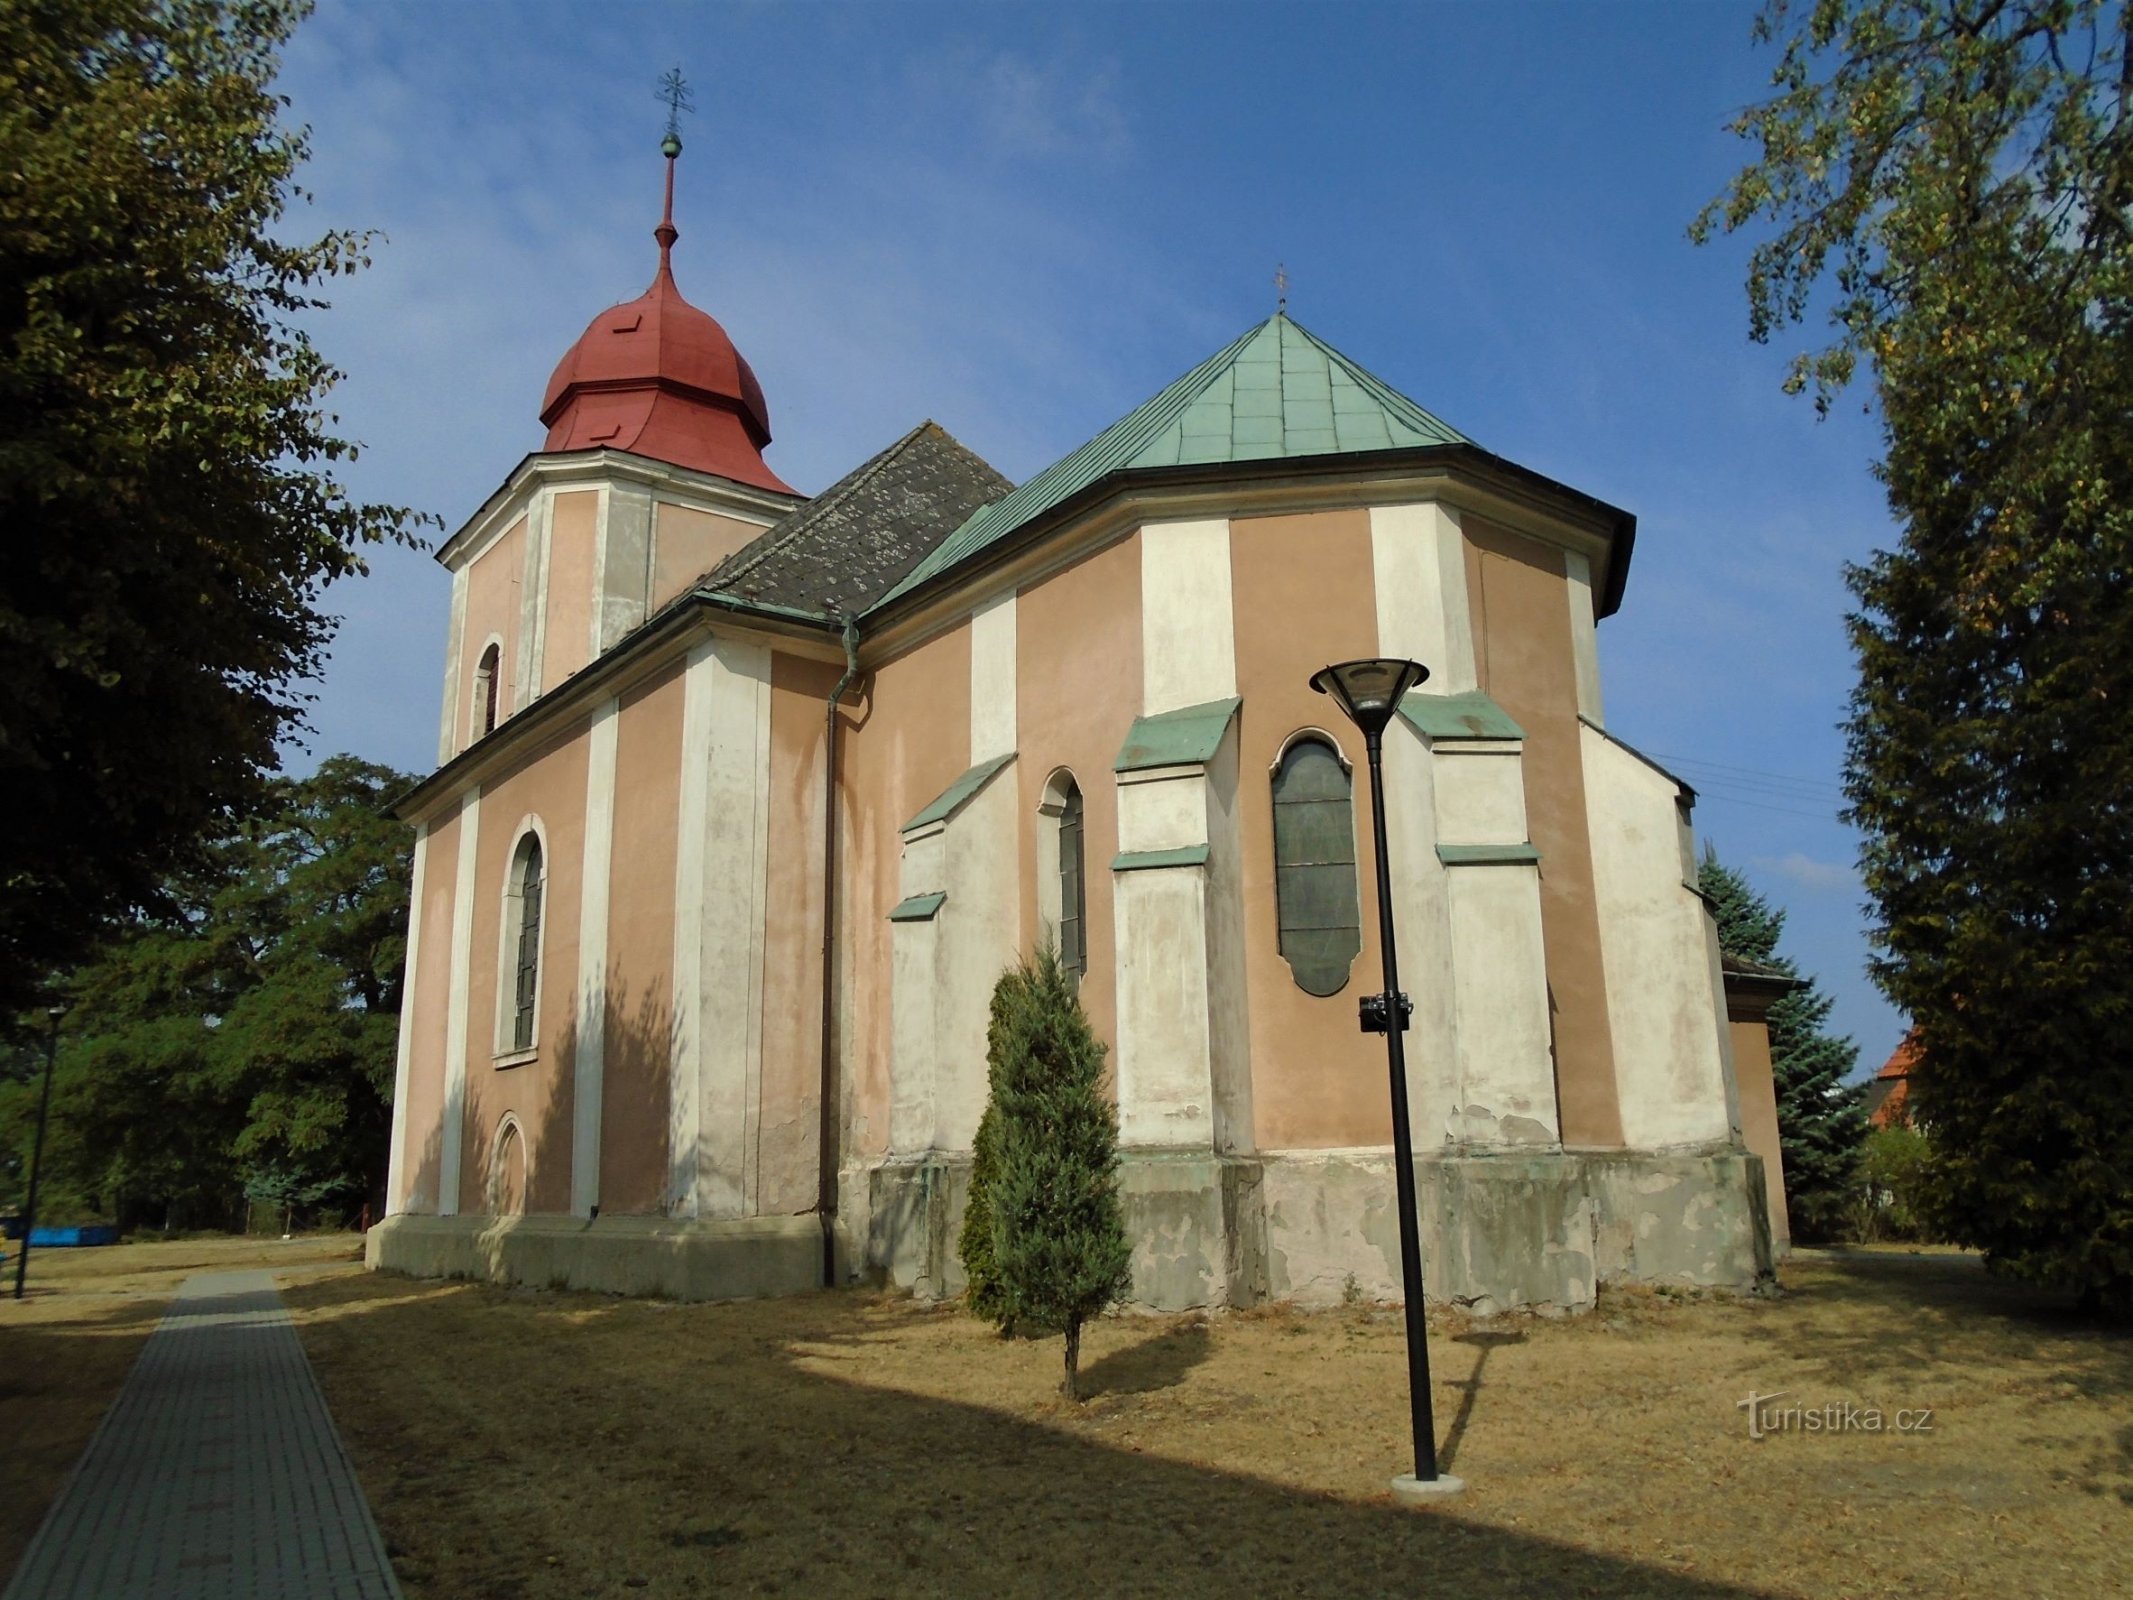 crkva sv. Petra i Pavla (Rohovládova Bělá, 31.8.2018. kolovoza XNUMX.)